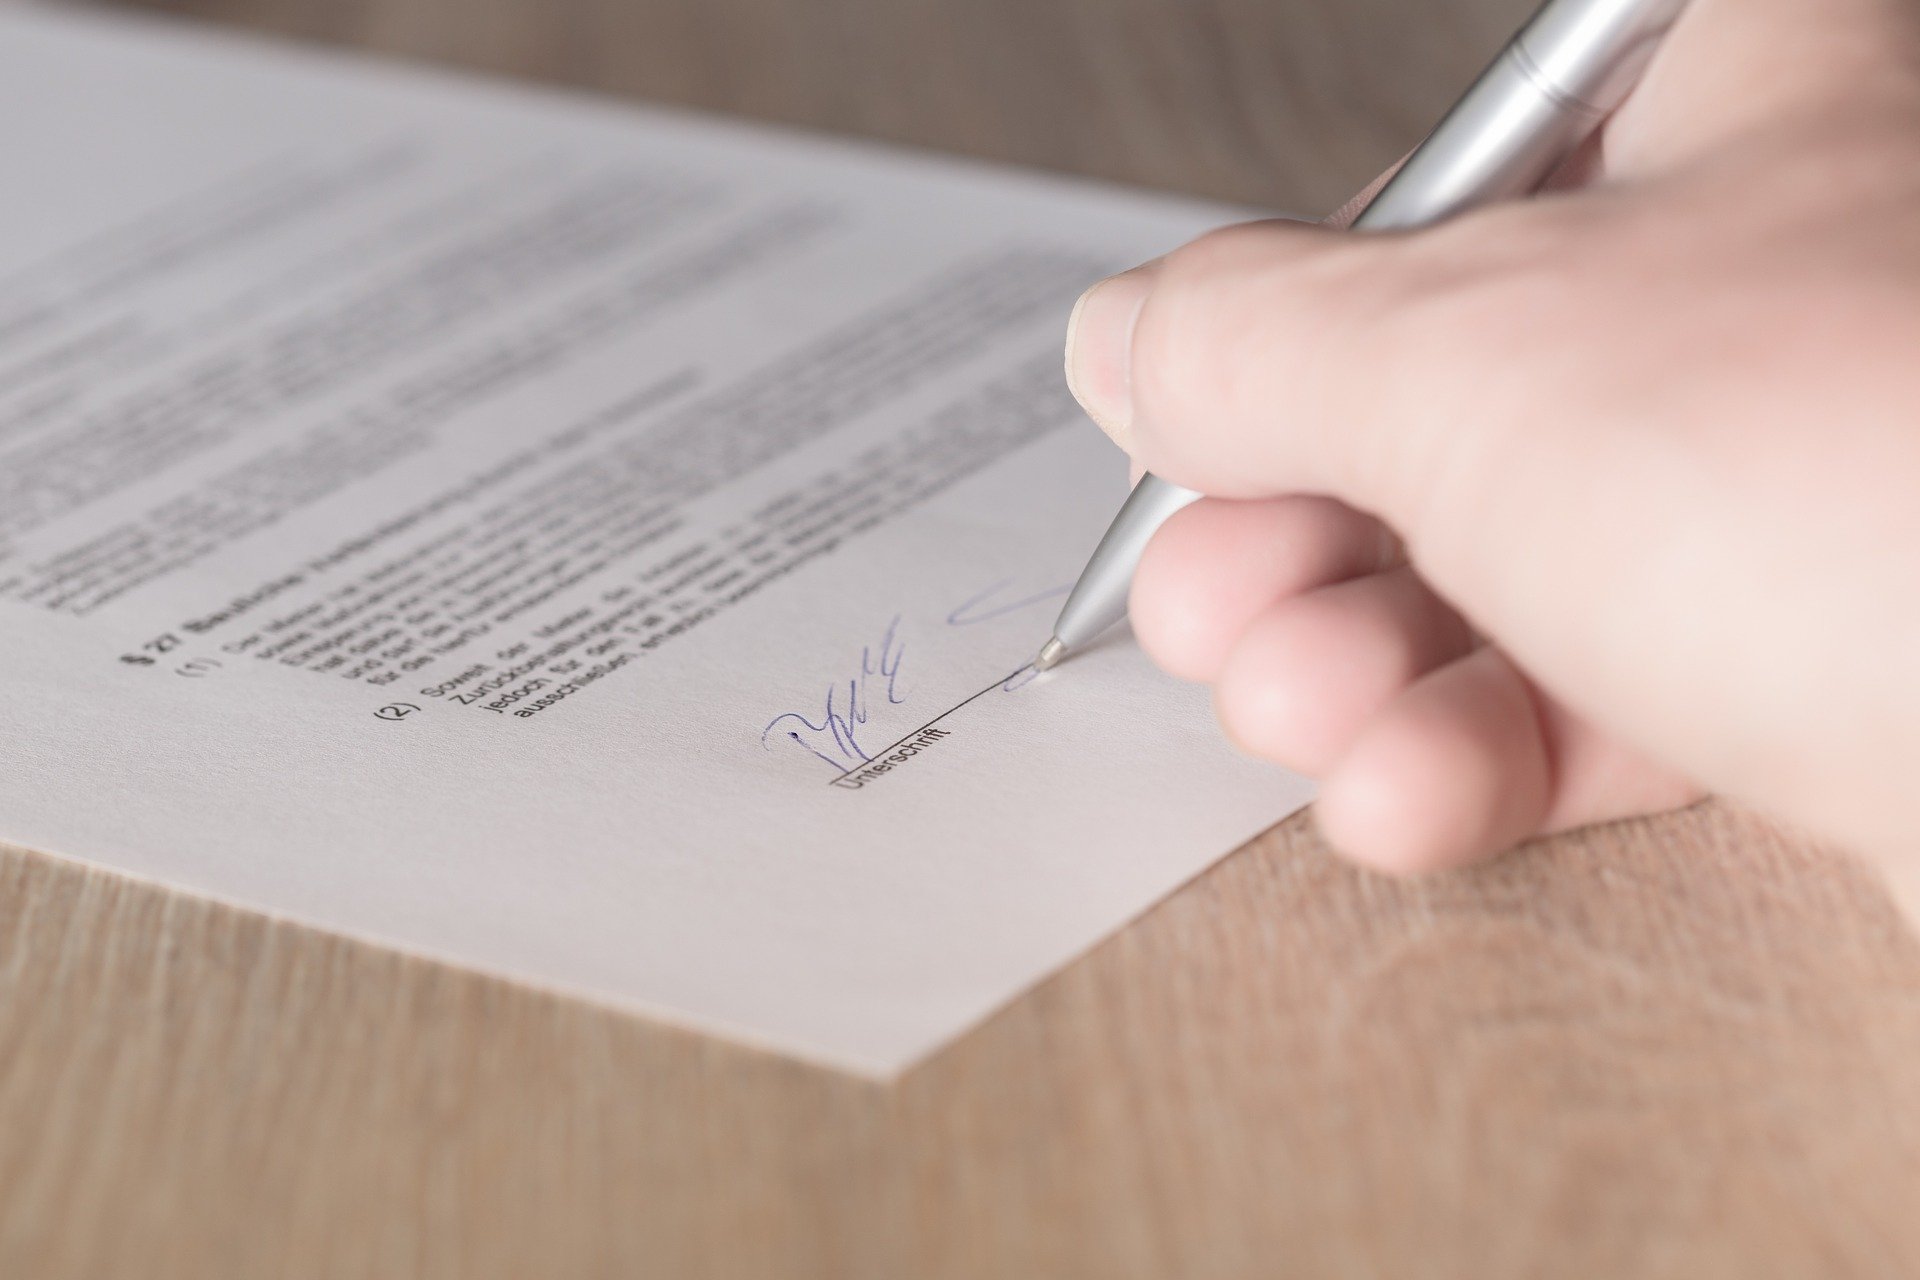 O novo contrato deverá mencionar elementos formais e jurídicos essenciais, tais como o valor principal da nova operação, a taxa de juros e encargos incidentes/Pixabay